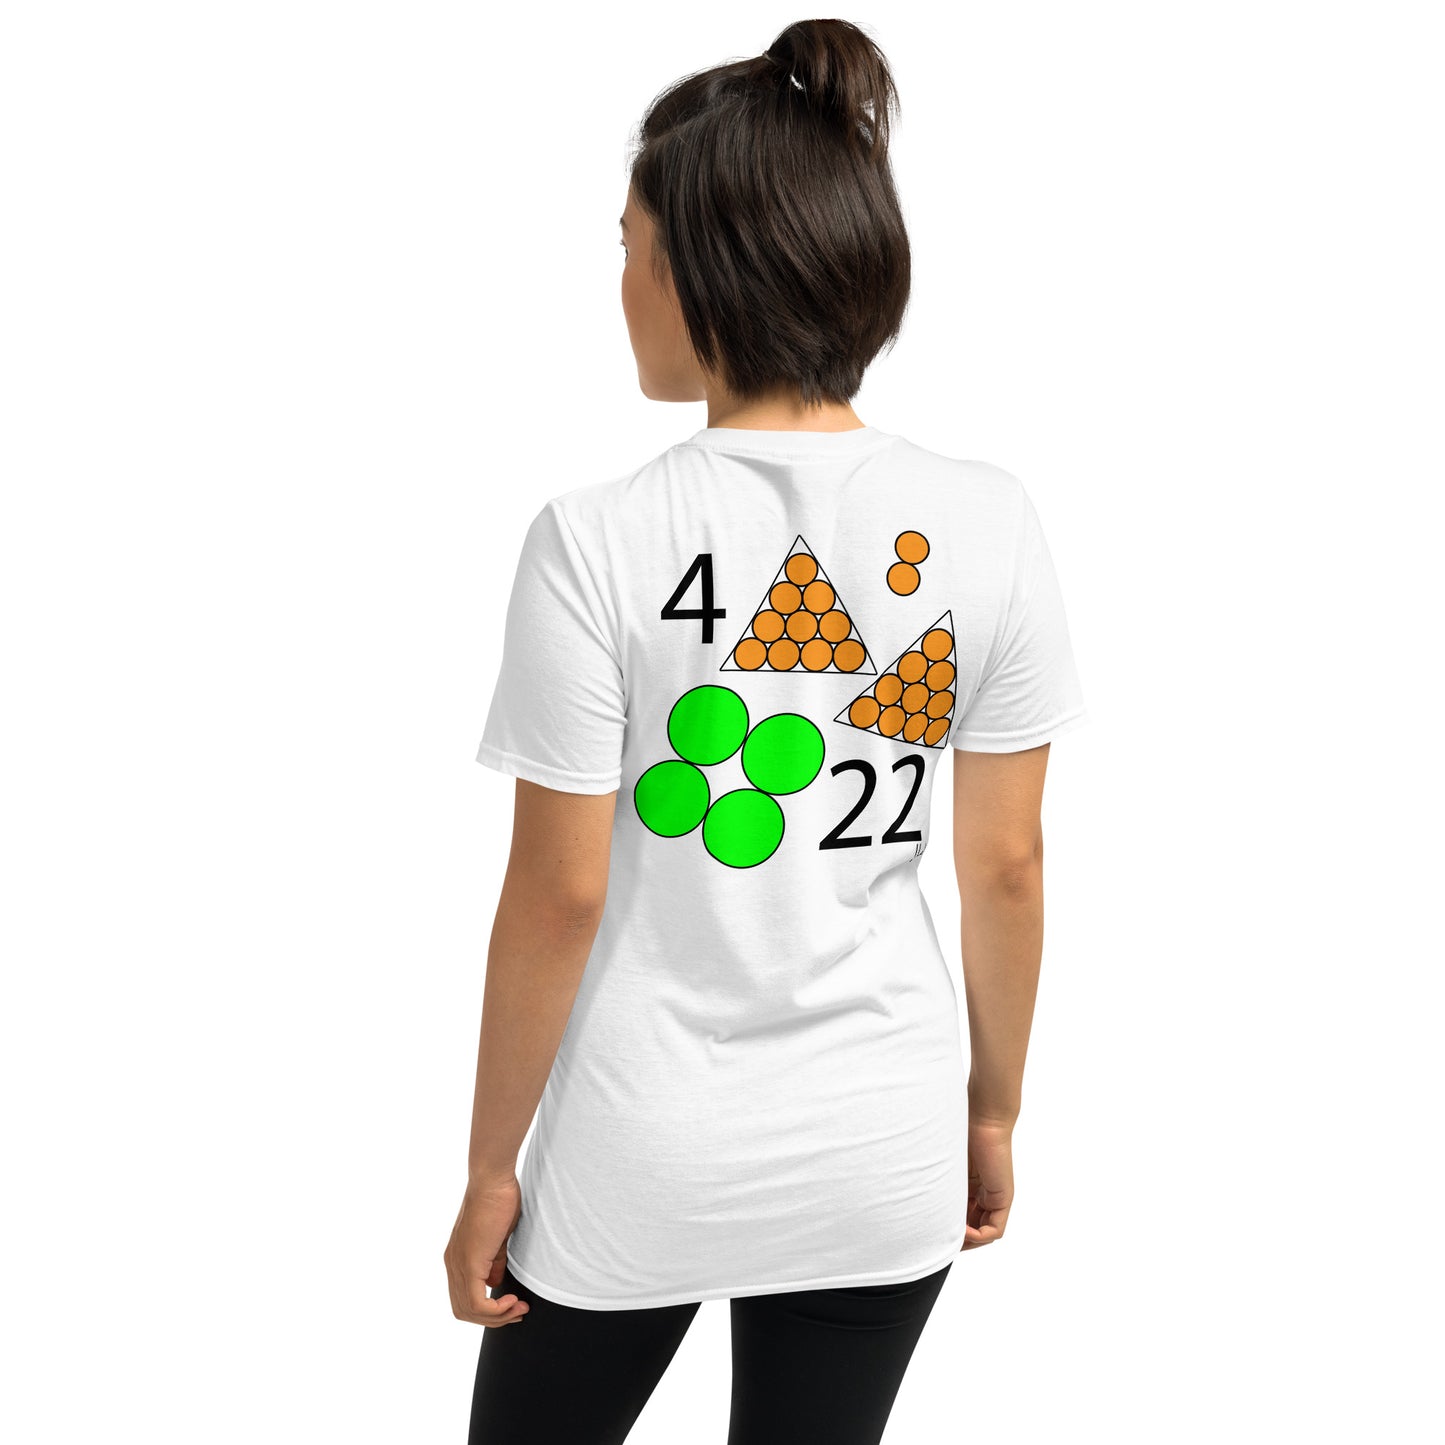 April 22nd Green T-Shirt at 4:22 0422